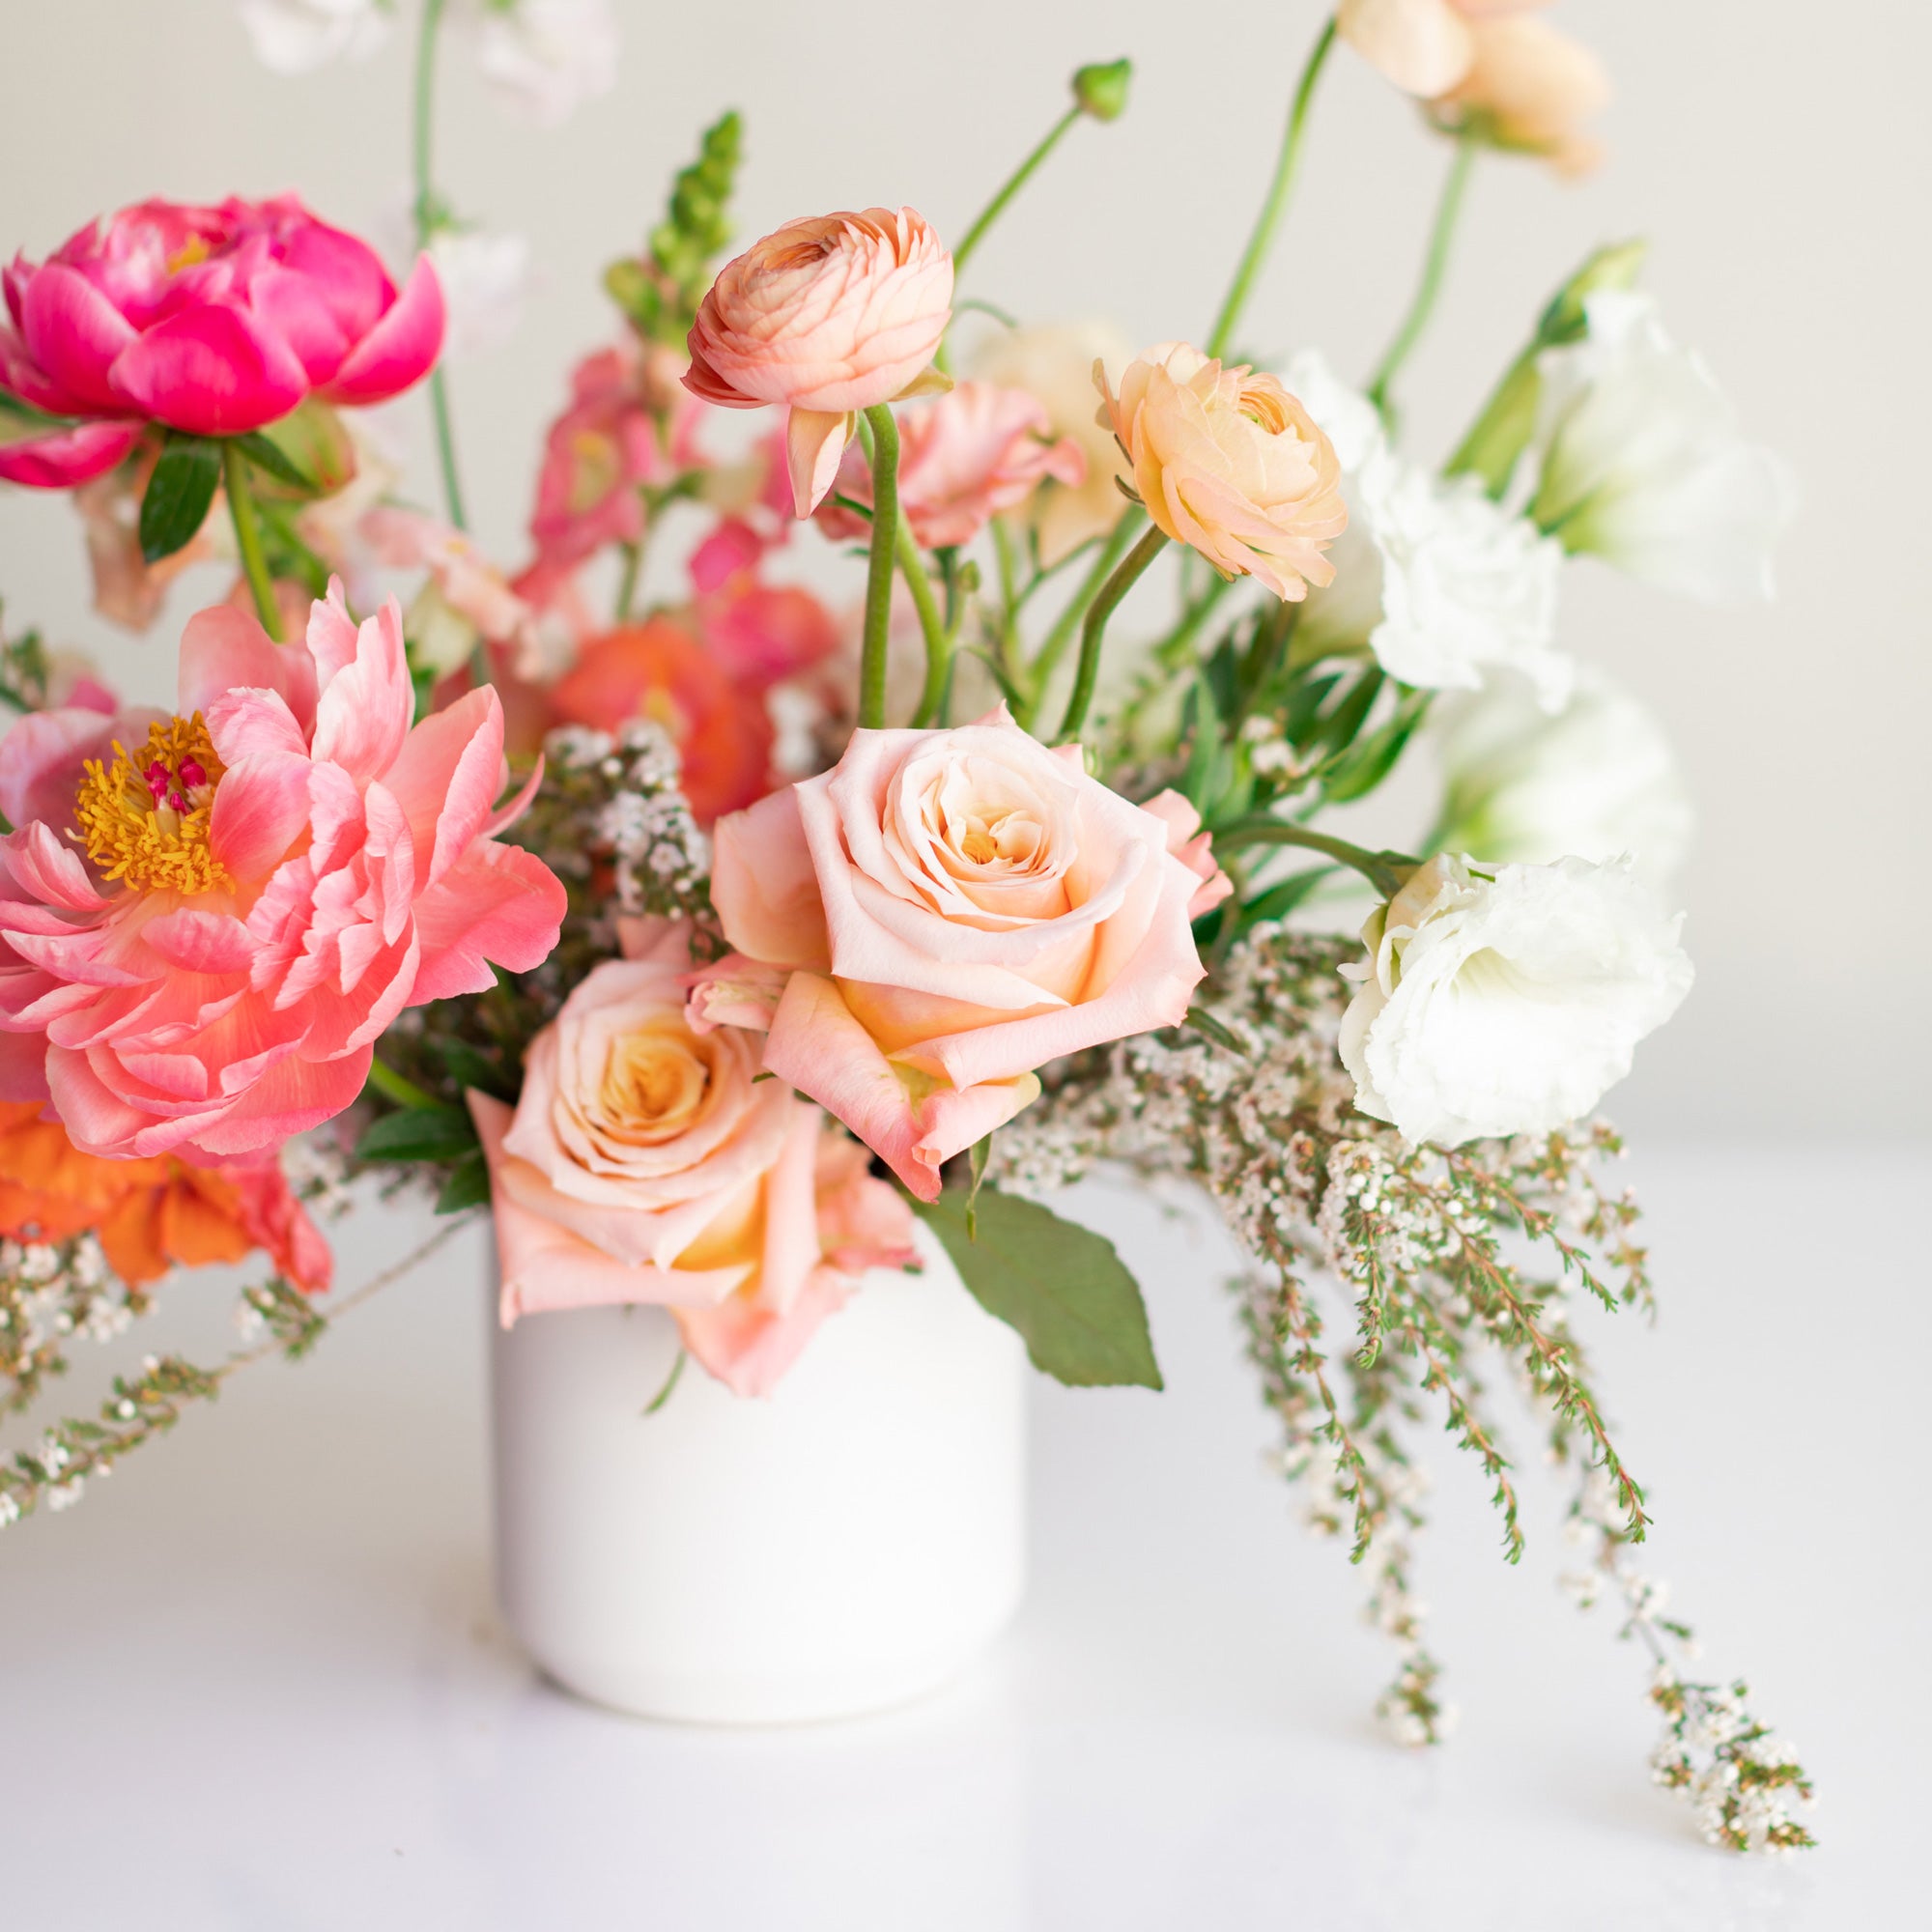 Wedding flower centerpiece